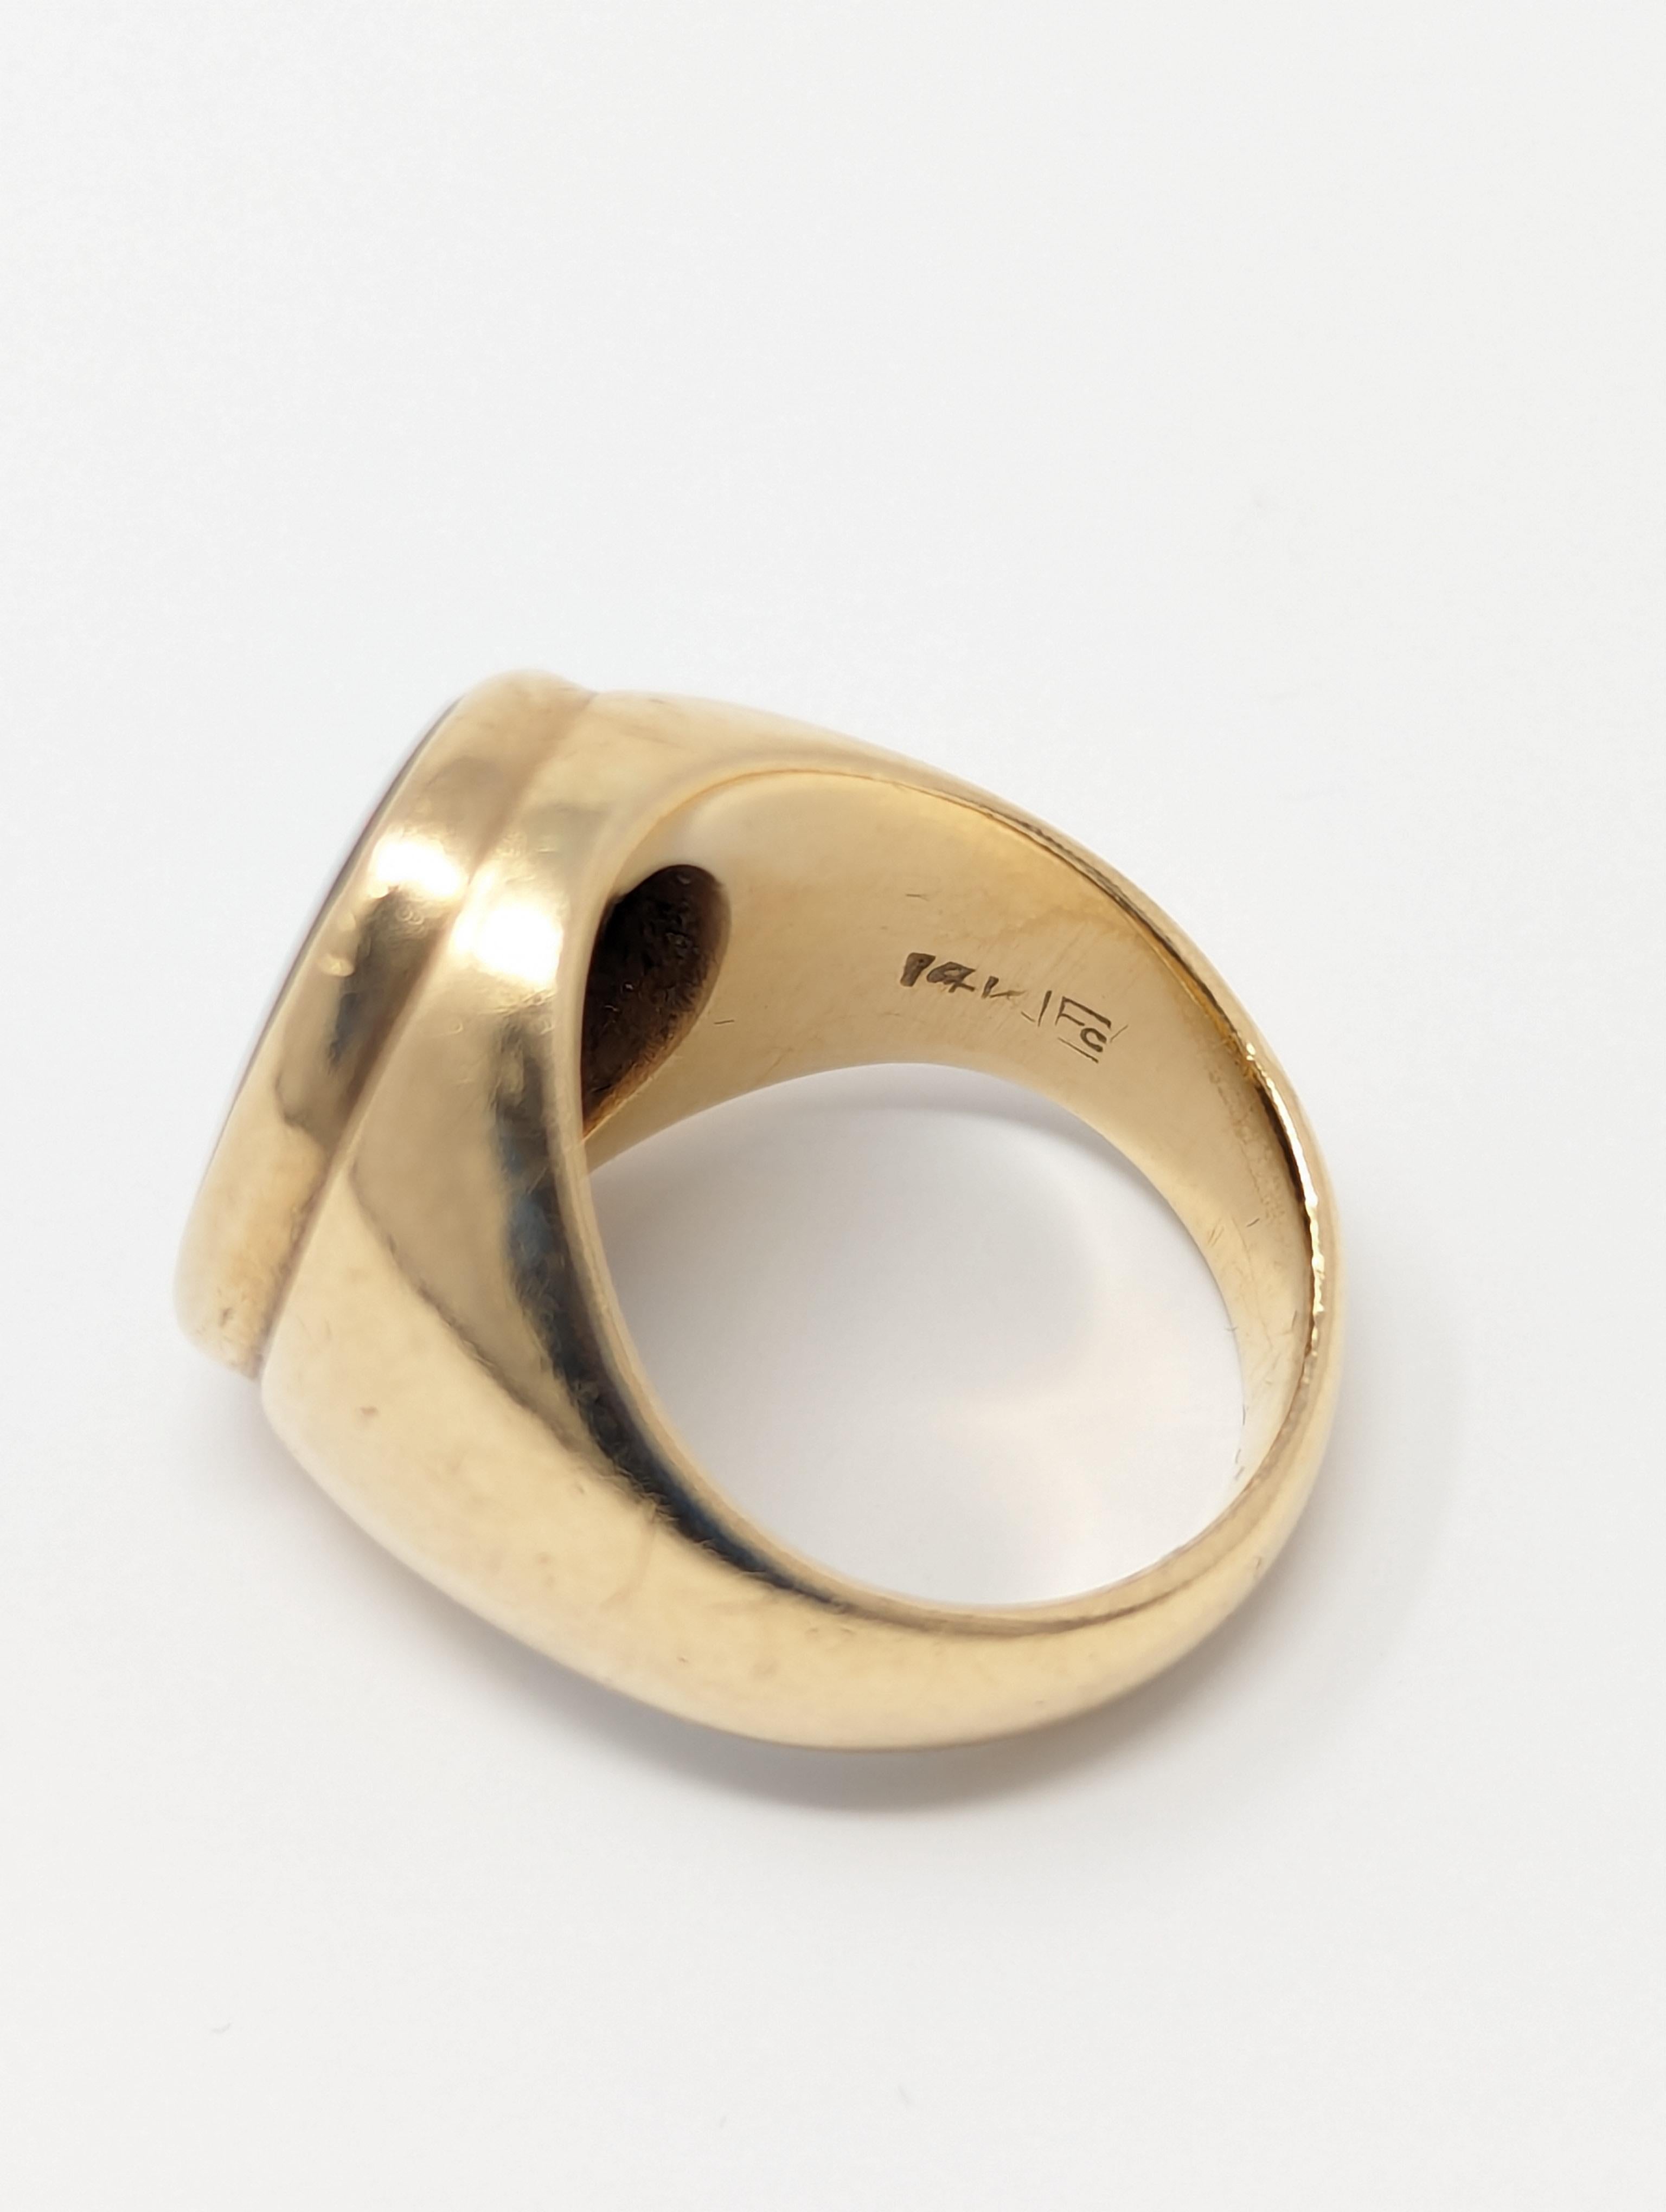 Vintage 14k Bloodstone Ring Signet Mid Century Modernist Ludwig Fessner Size 5.5 For Sale 1